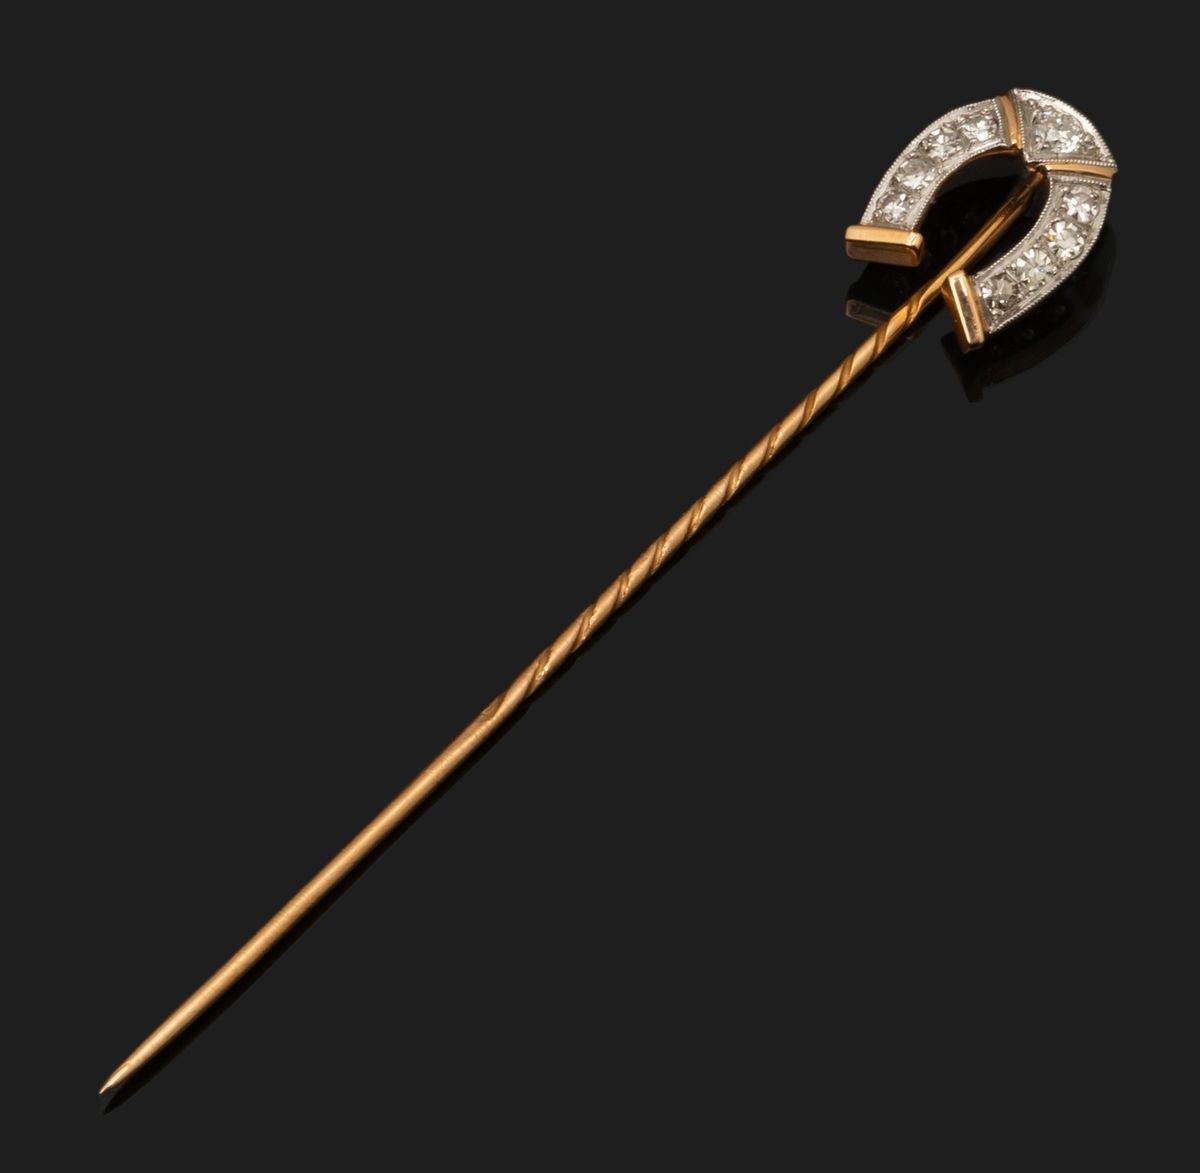 Null 18K（750千分之一）黄金和白金的领带针，其头部代表一个铺有8x8钻石和圆形明亮式切割的马蹄形。
长度：6,6 cm。
毛重：1.9克。